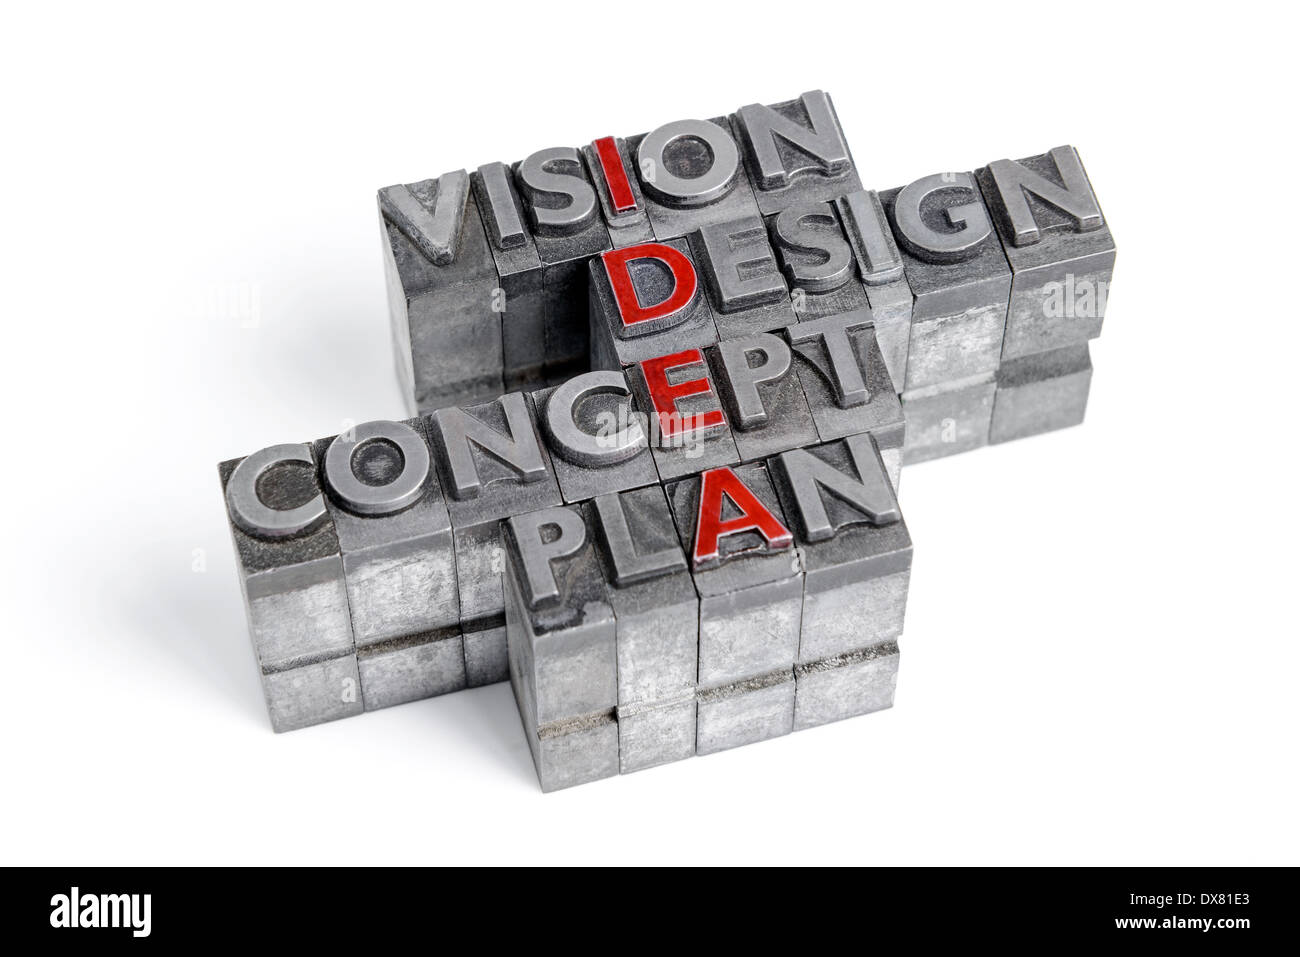 Idea come un acronimo con le parole Vision Concept Design e piano in metallo vecchia tipografia blocchi isolati su bianco. Foto Stock